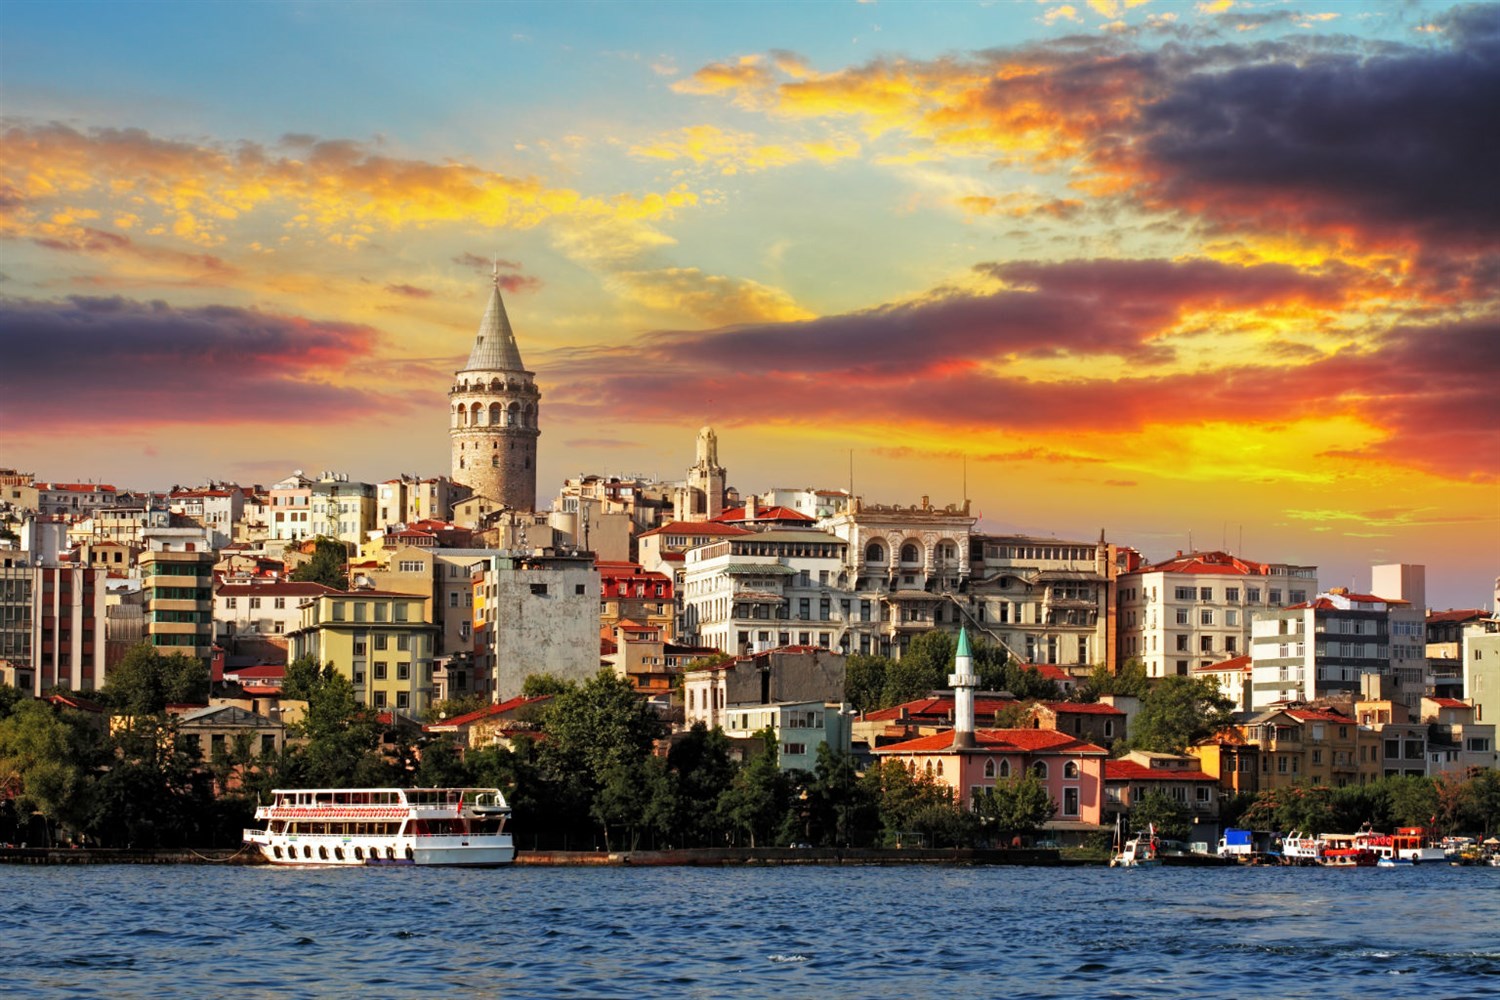 ما هي افضل منطقة للسكن في اسطنبول؟ - أنوثة - Ounousa ...